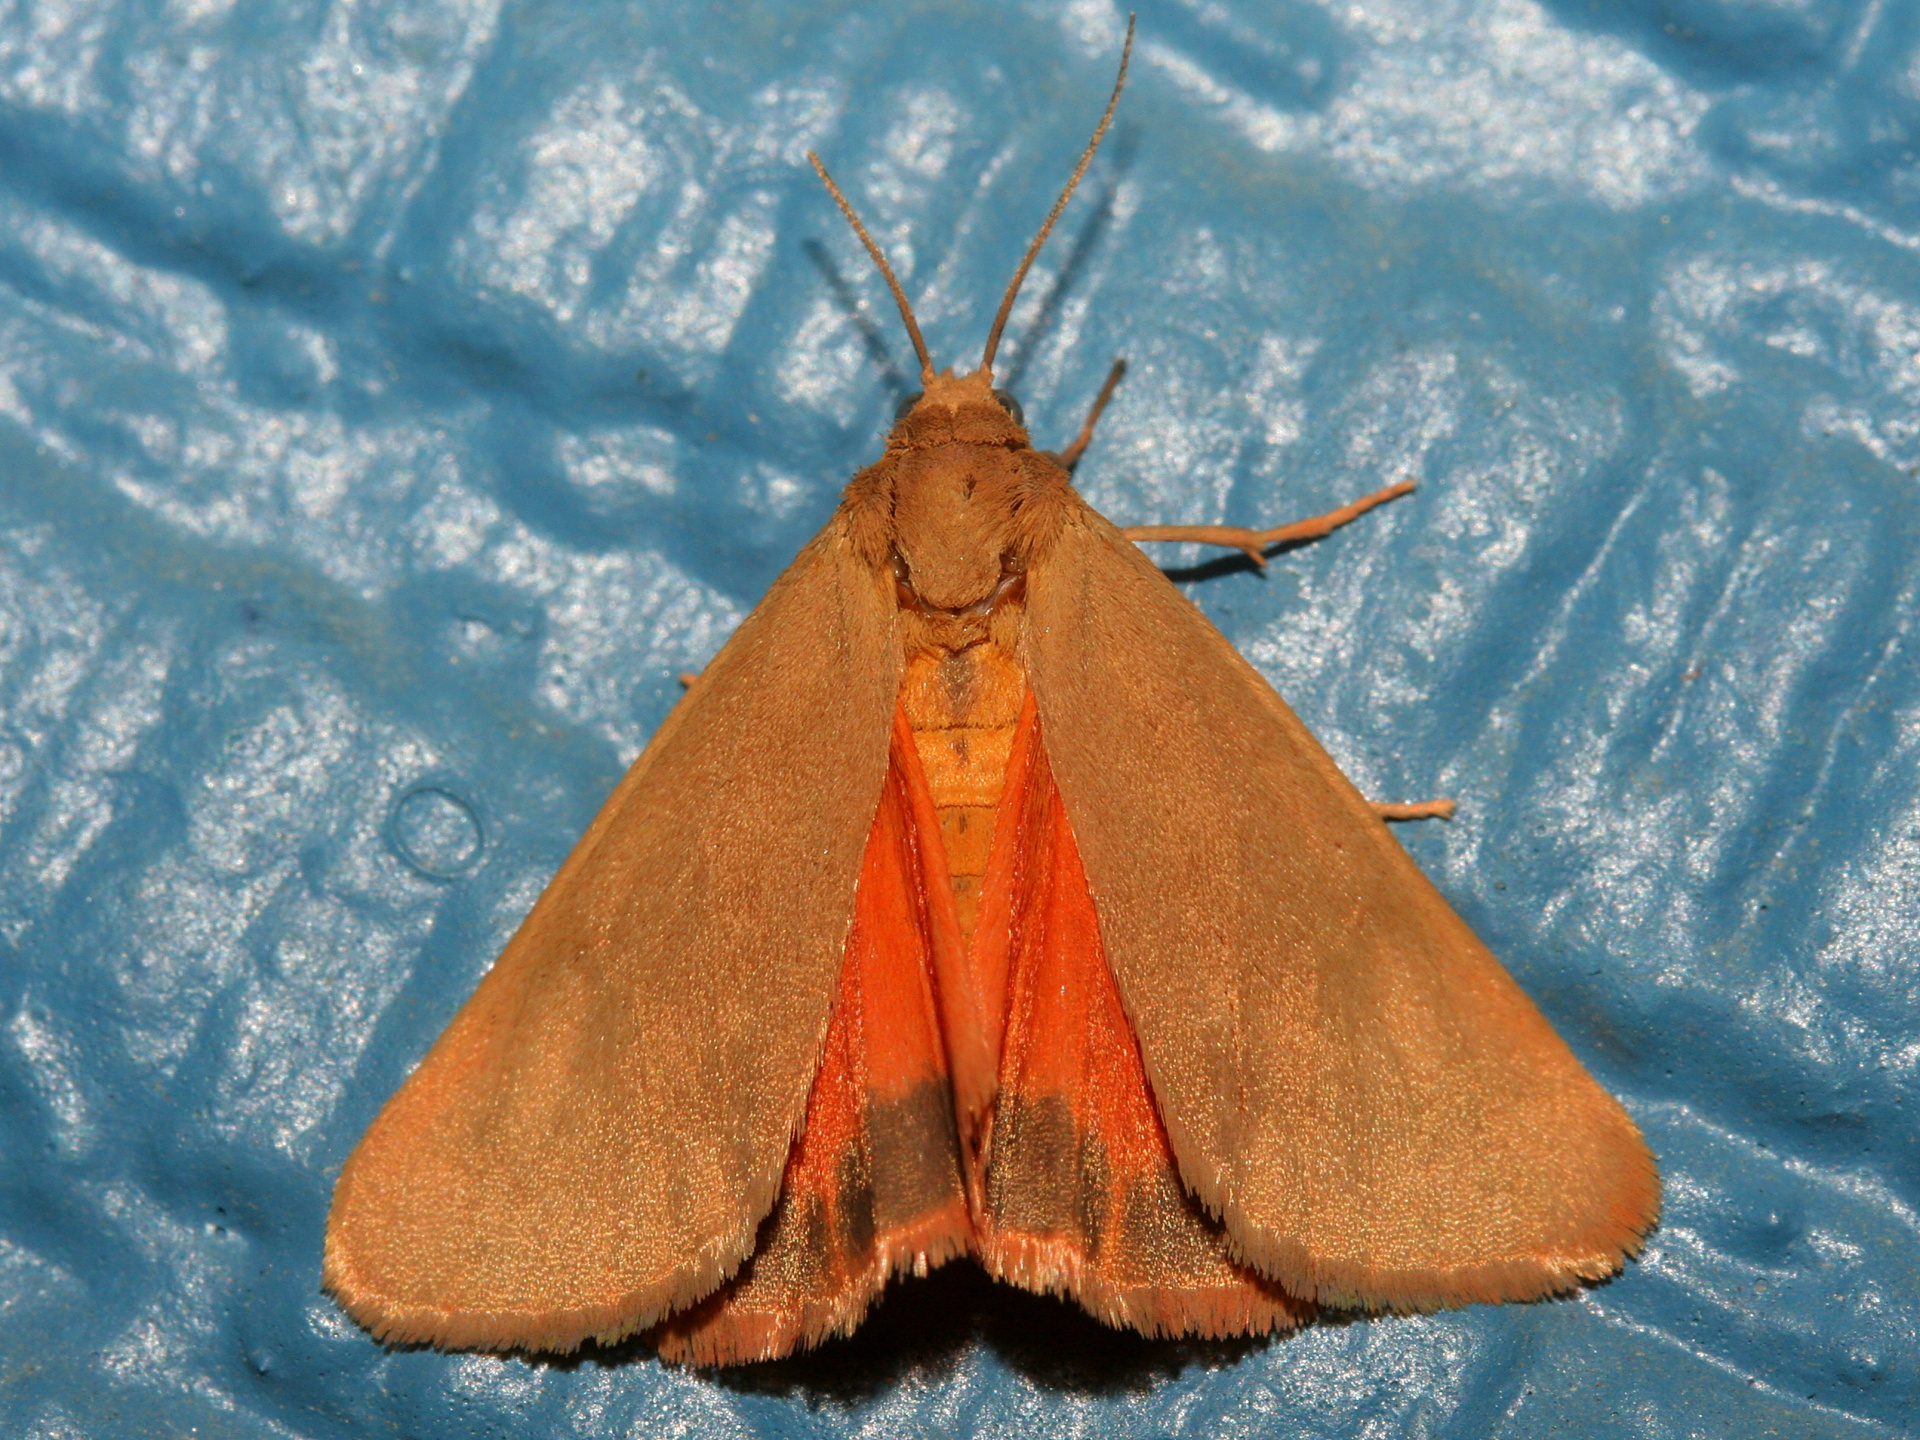 Holomelina aurantiaca (Podróże » USA: Epopeja Czejeńska » Zwierzęta » Owady » Motyle i ćmy » Arctiidae)